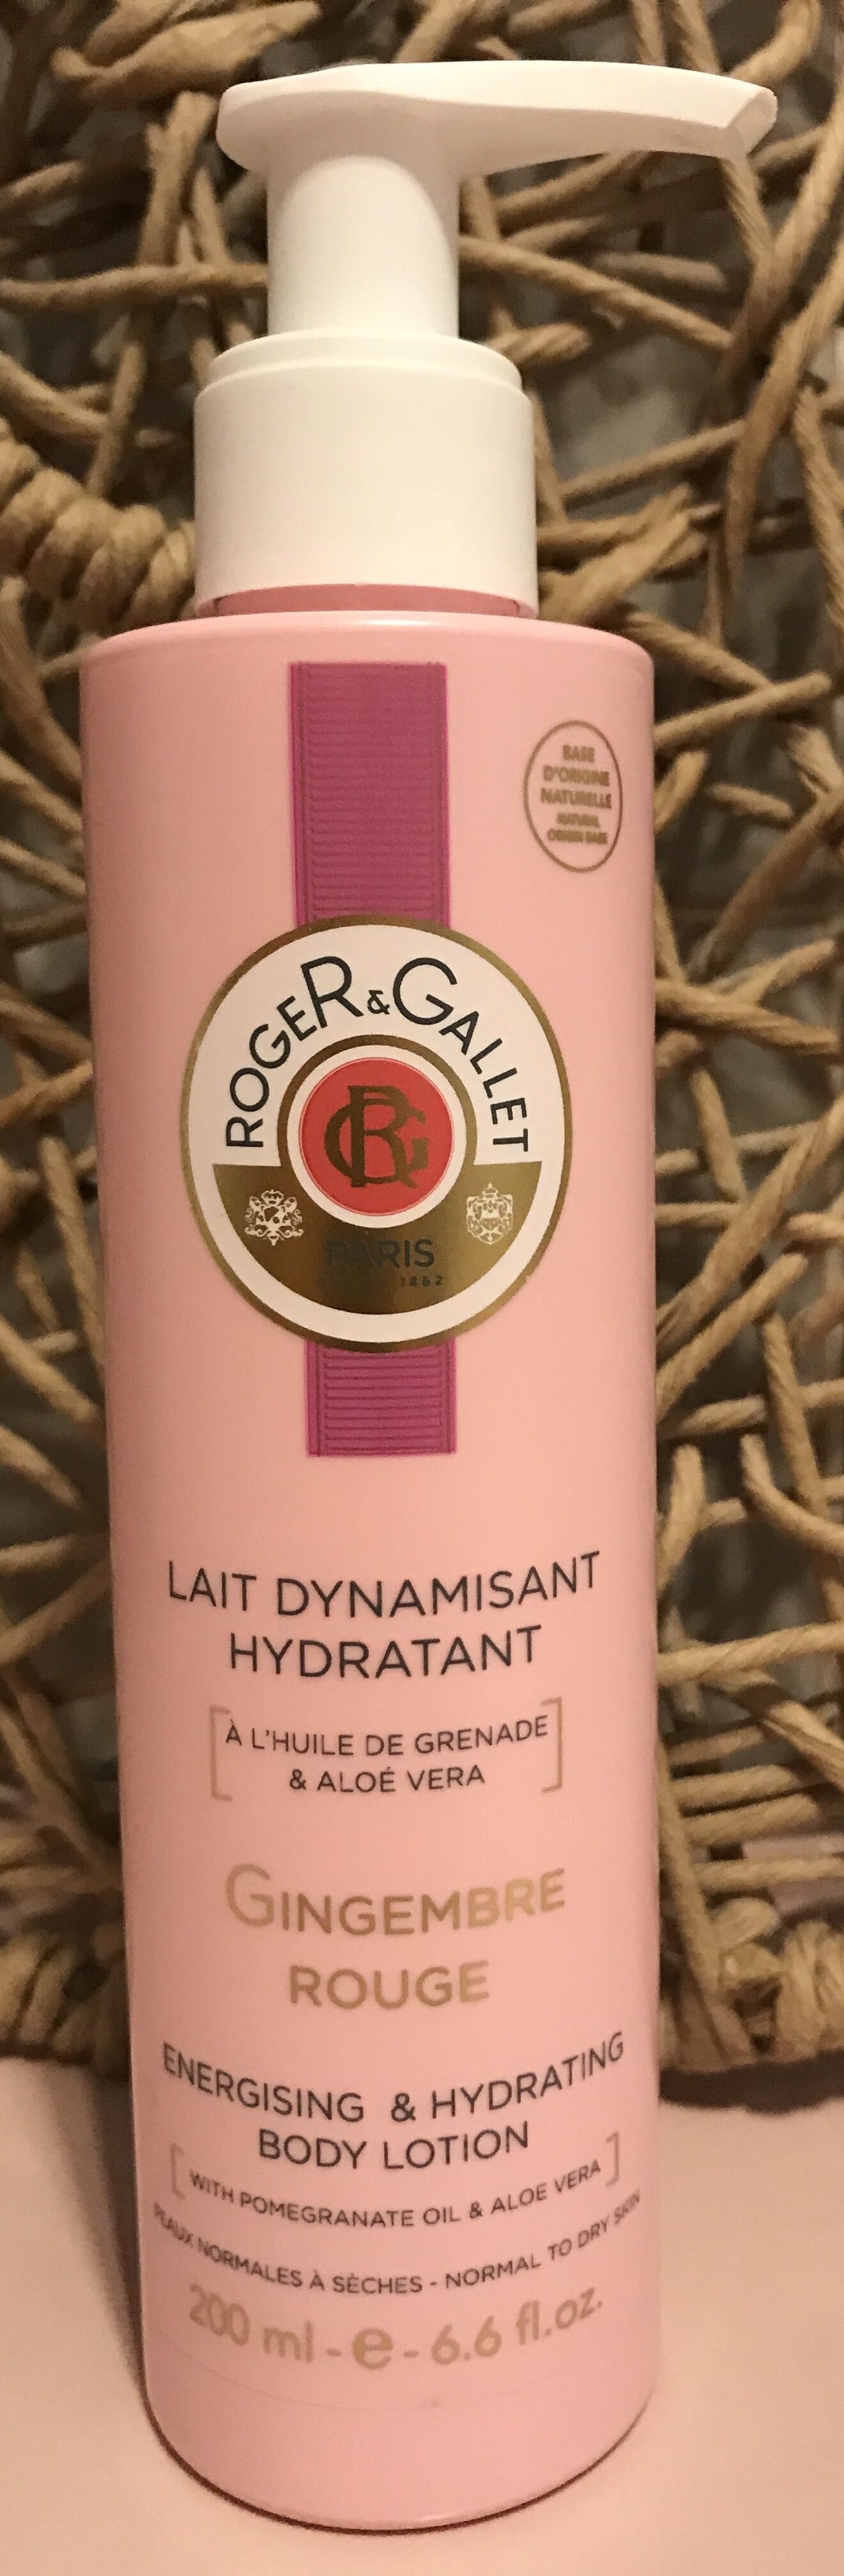 Lait dynamisant hydratant Gingembre Rouge - Продукт - fr